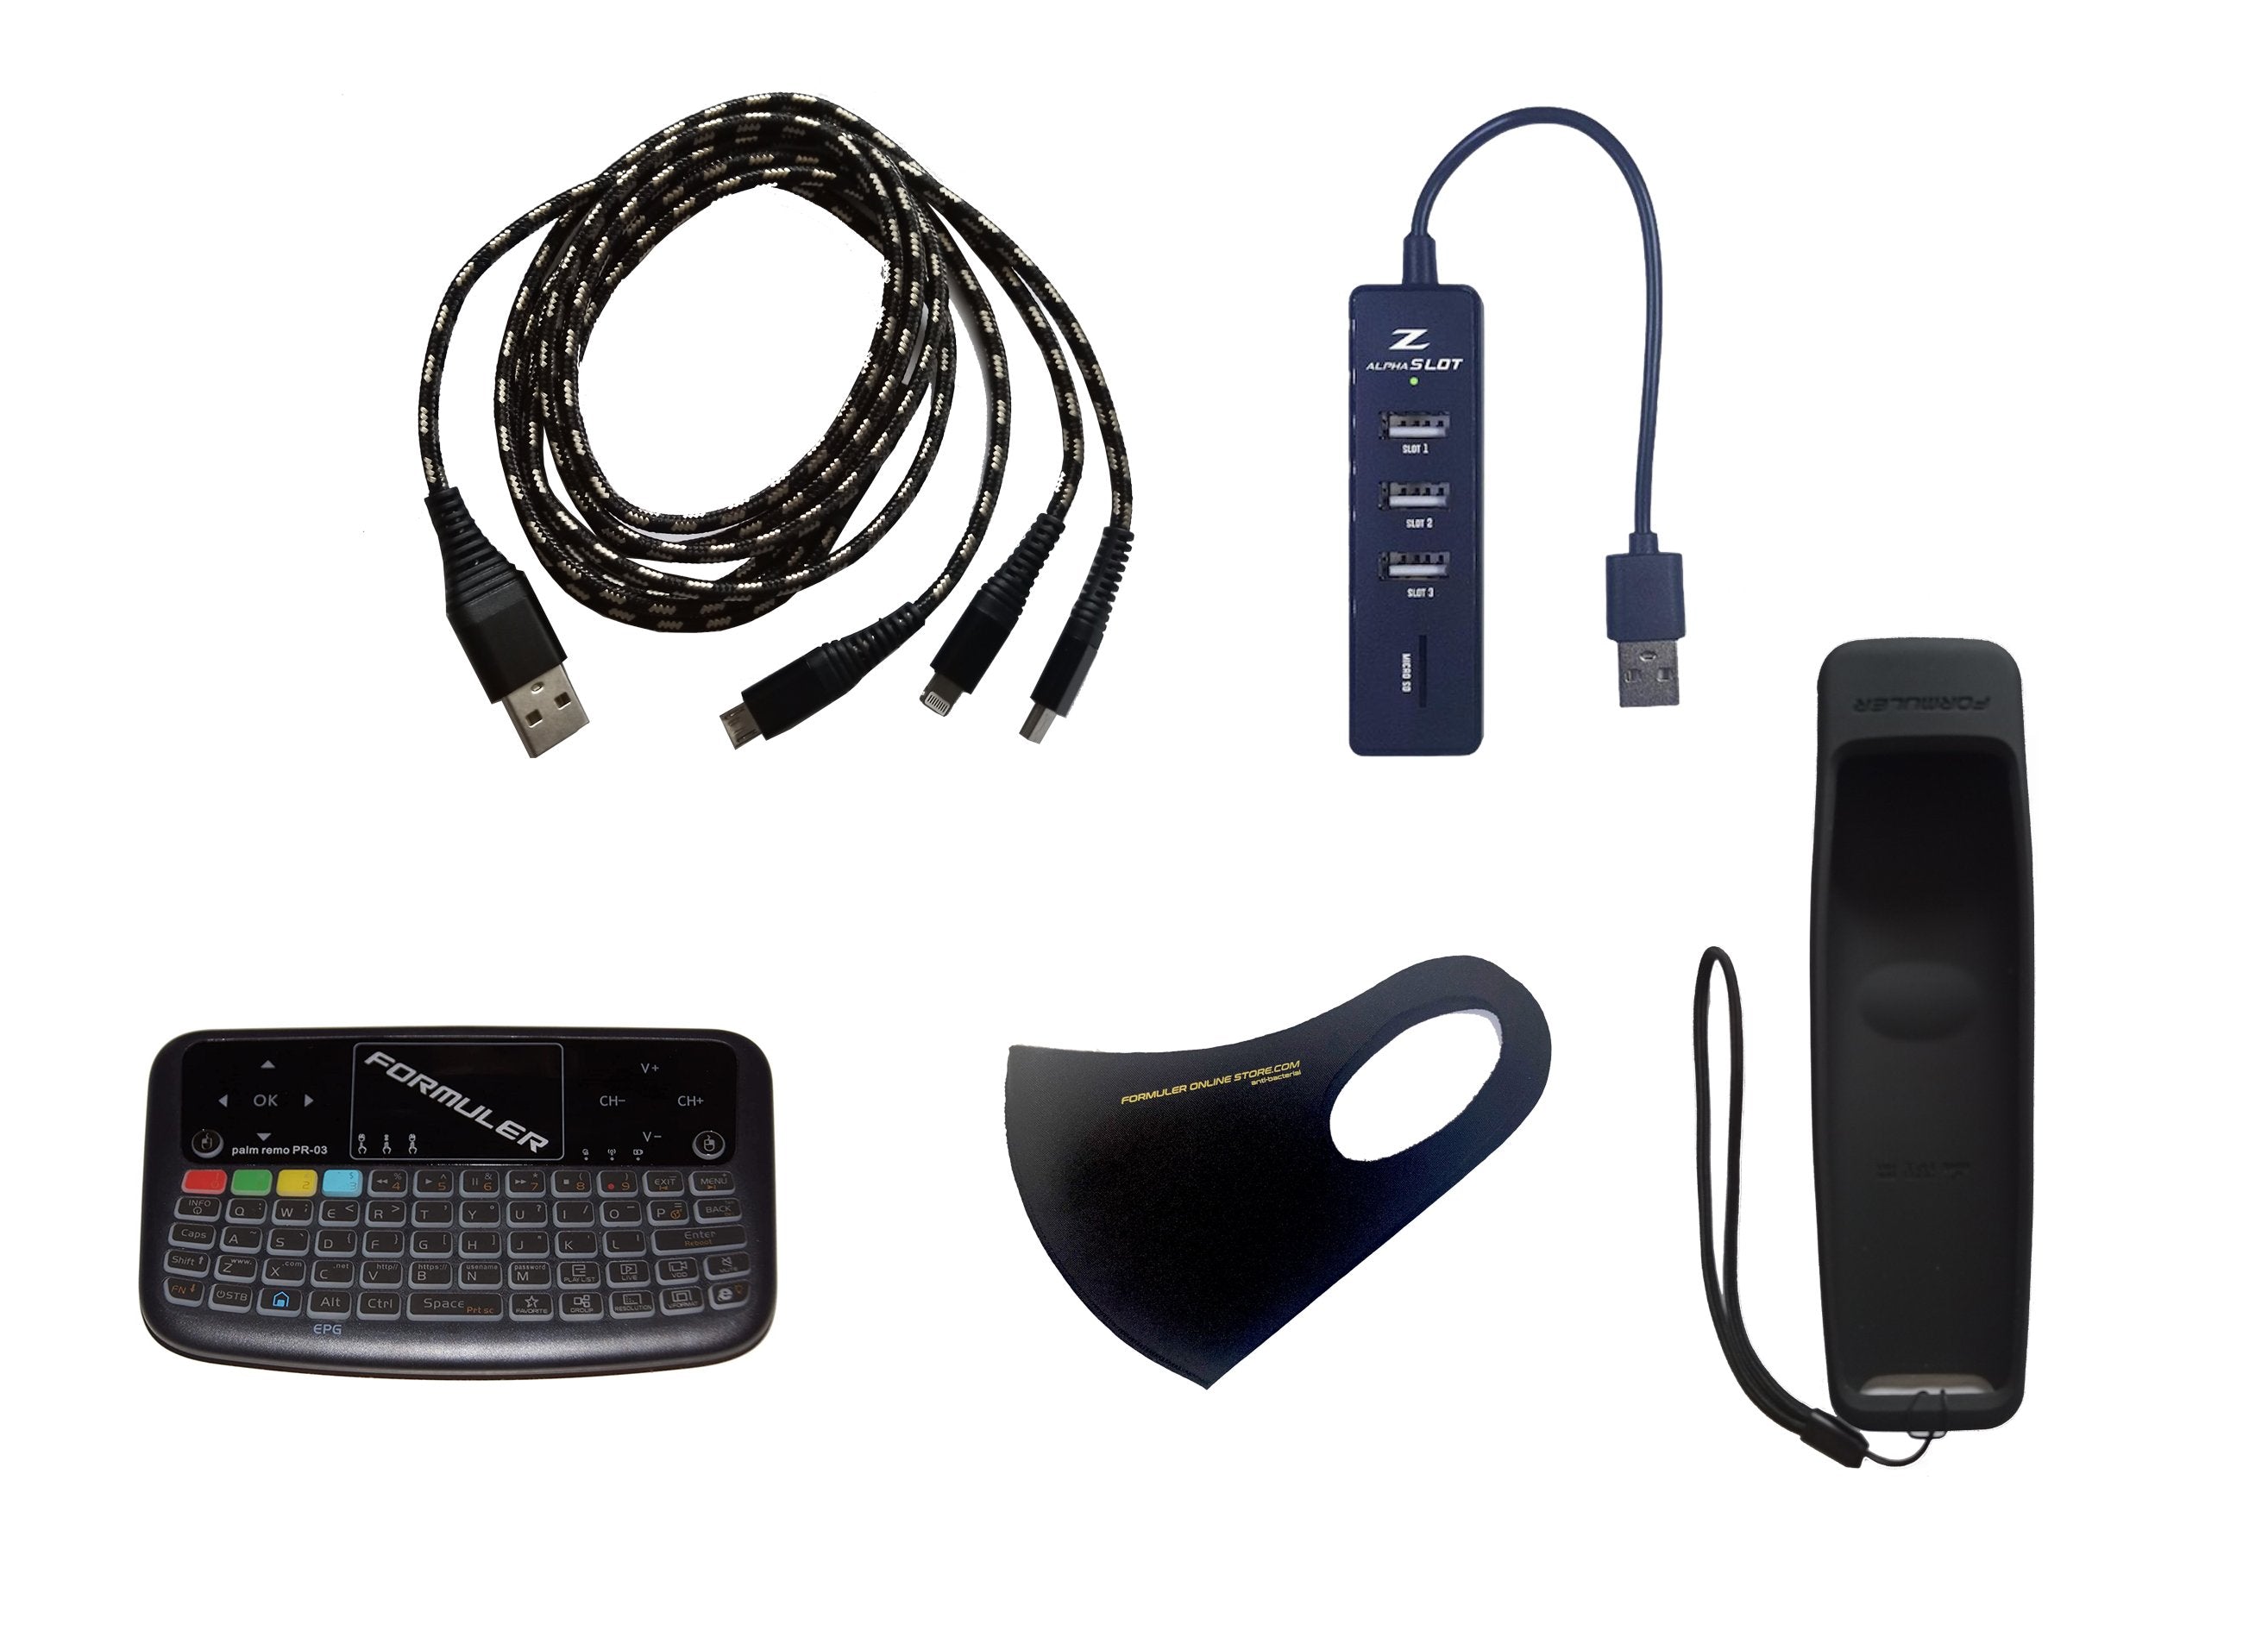 Paquete de accesorios incluido: Mini teclado inalámbrico con panel táctil + concentrador USB + extensión de cable USB 3-1 + cubierta remota negra + máscara